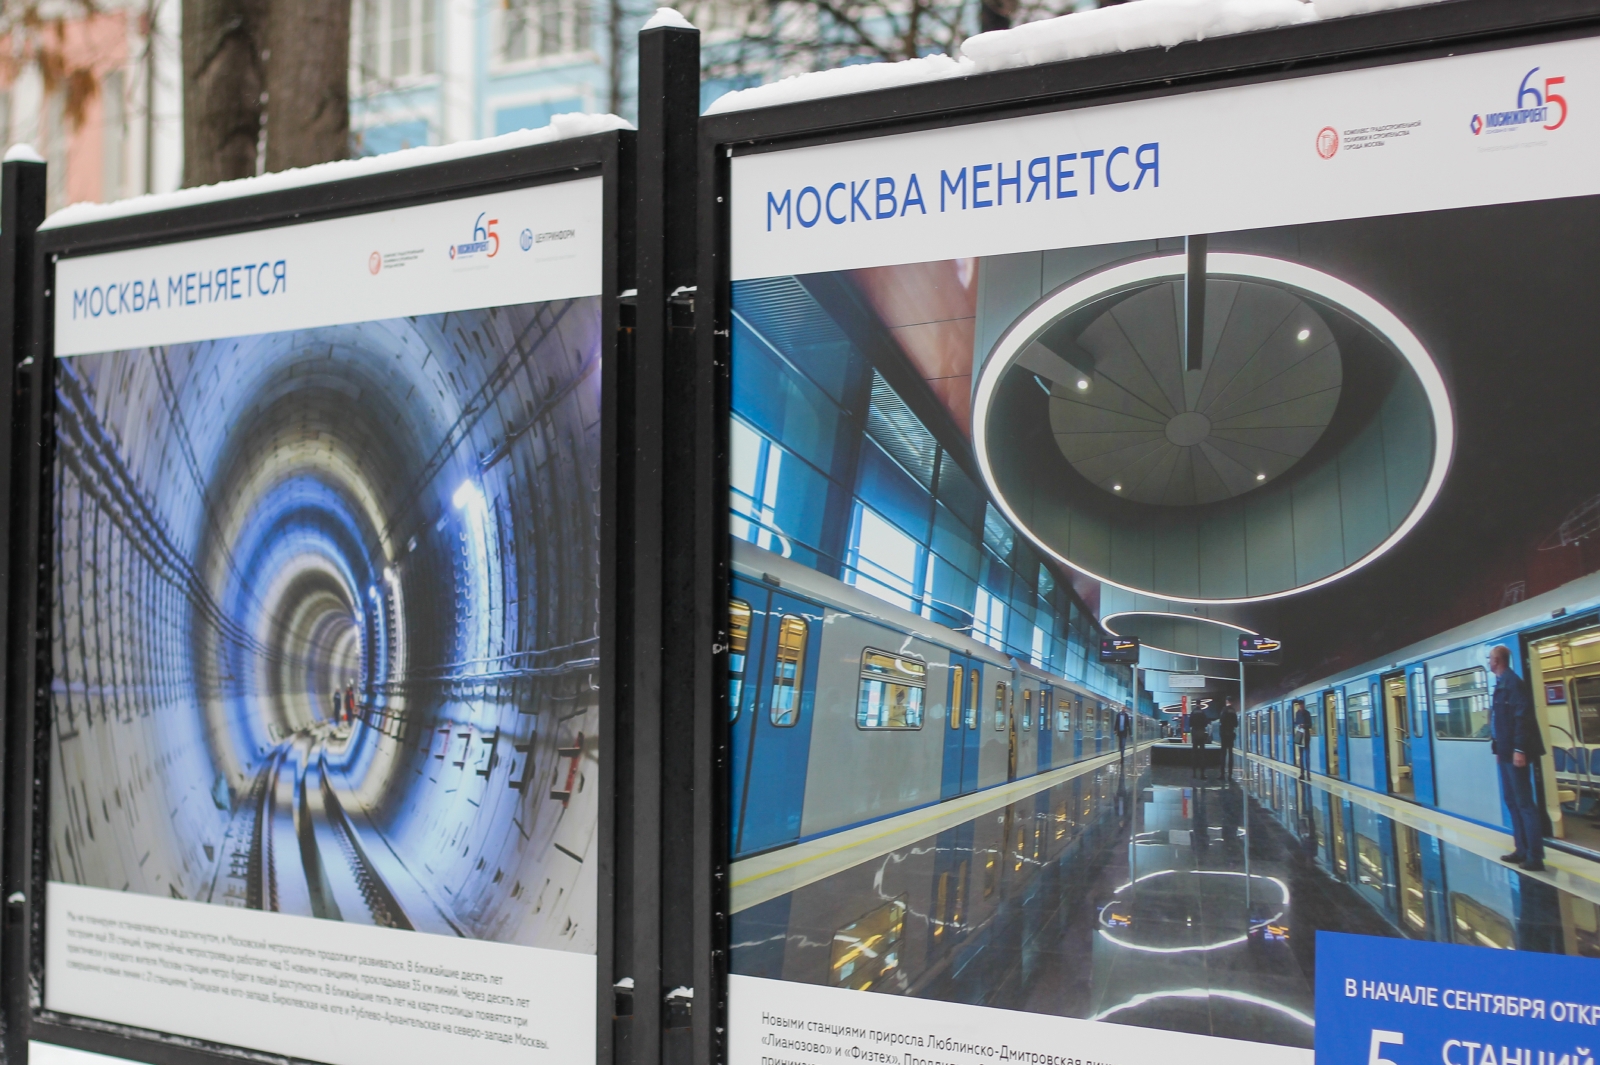 Итоги работы строительной отрасли Москвы представили на выставке в Тверском районе, фото